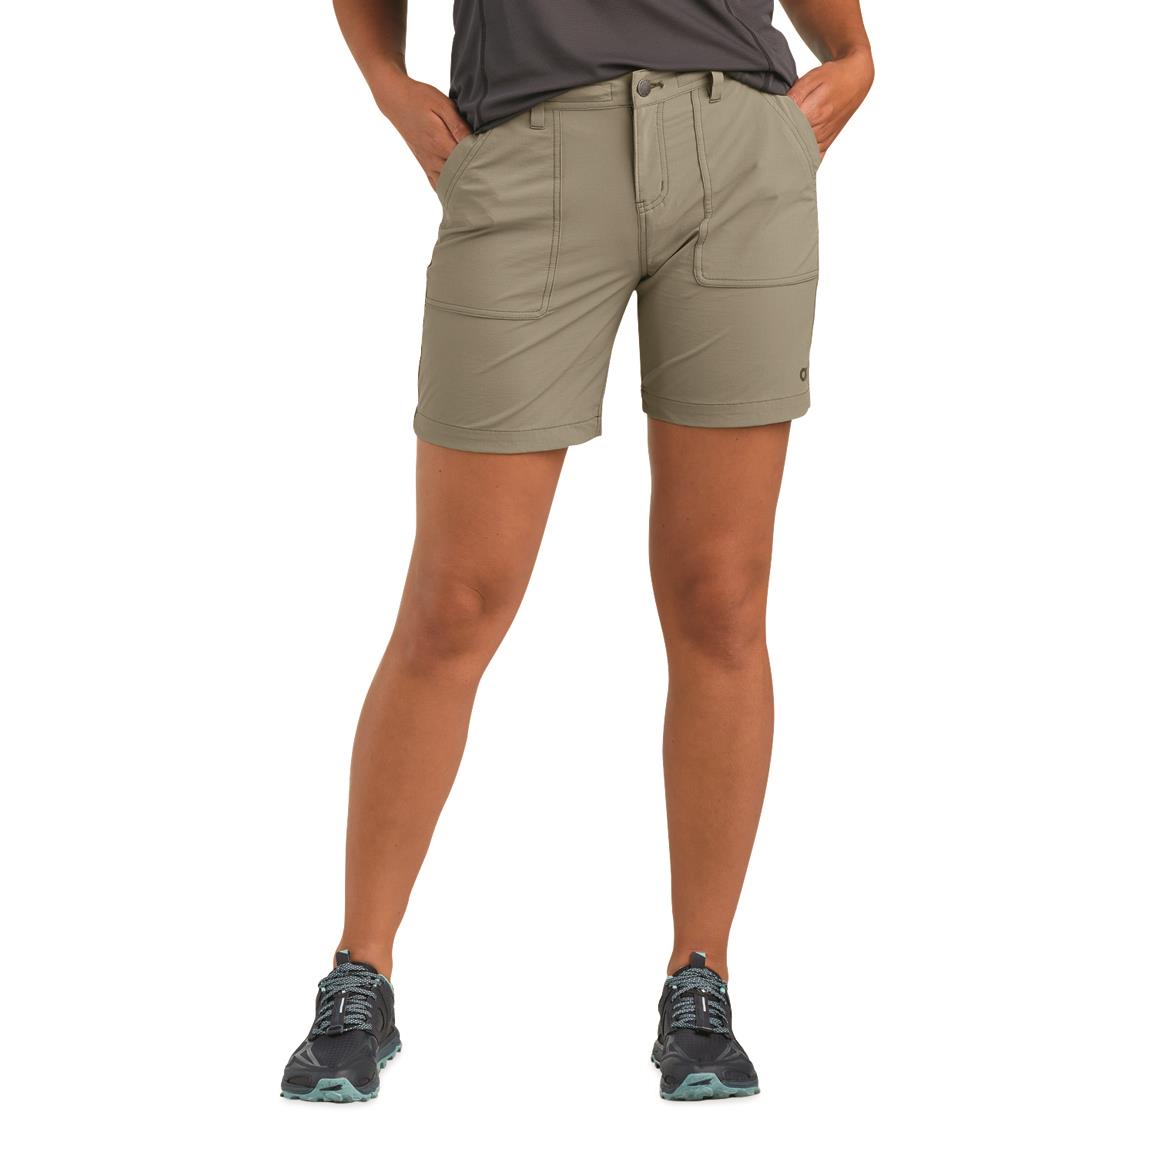 Outdoor Research Women's Ferrosi Shorts, 7" Inseam, Flint